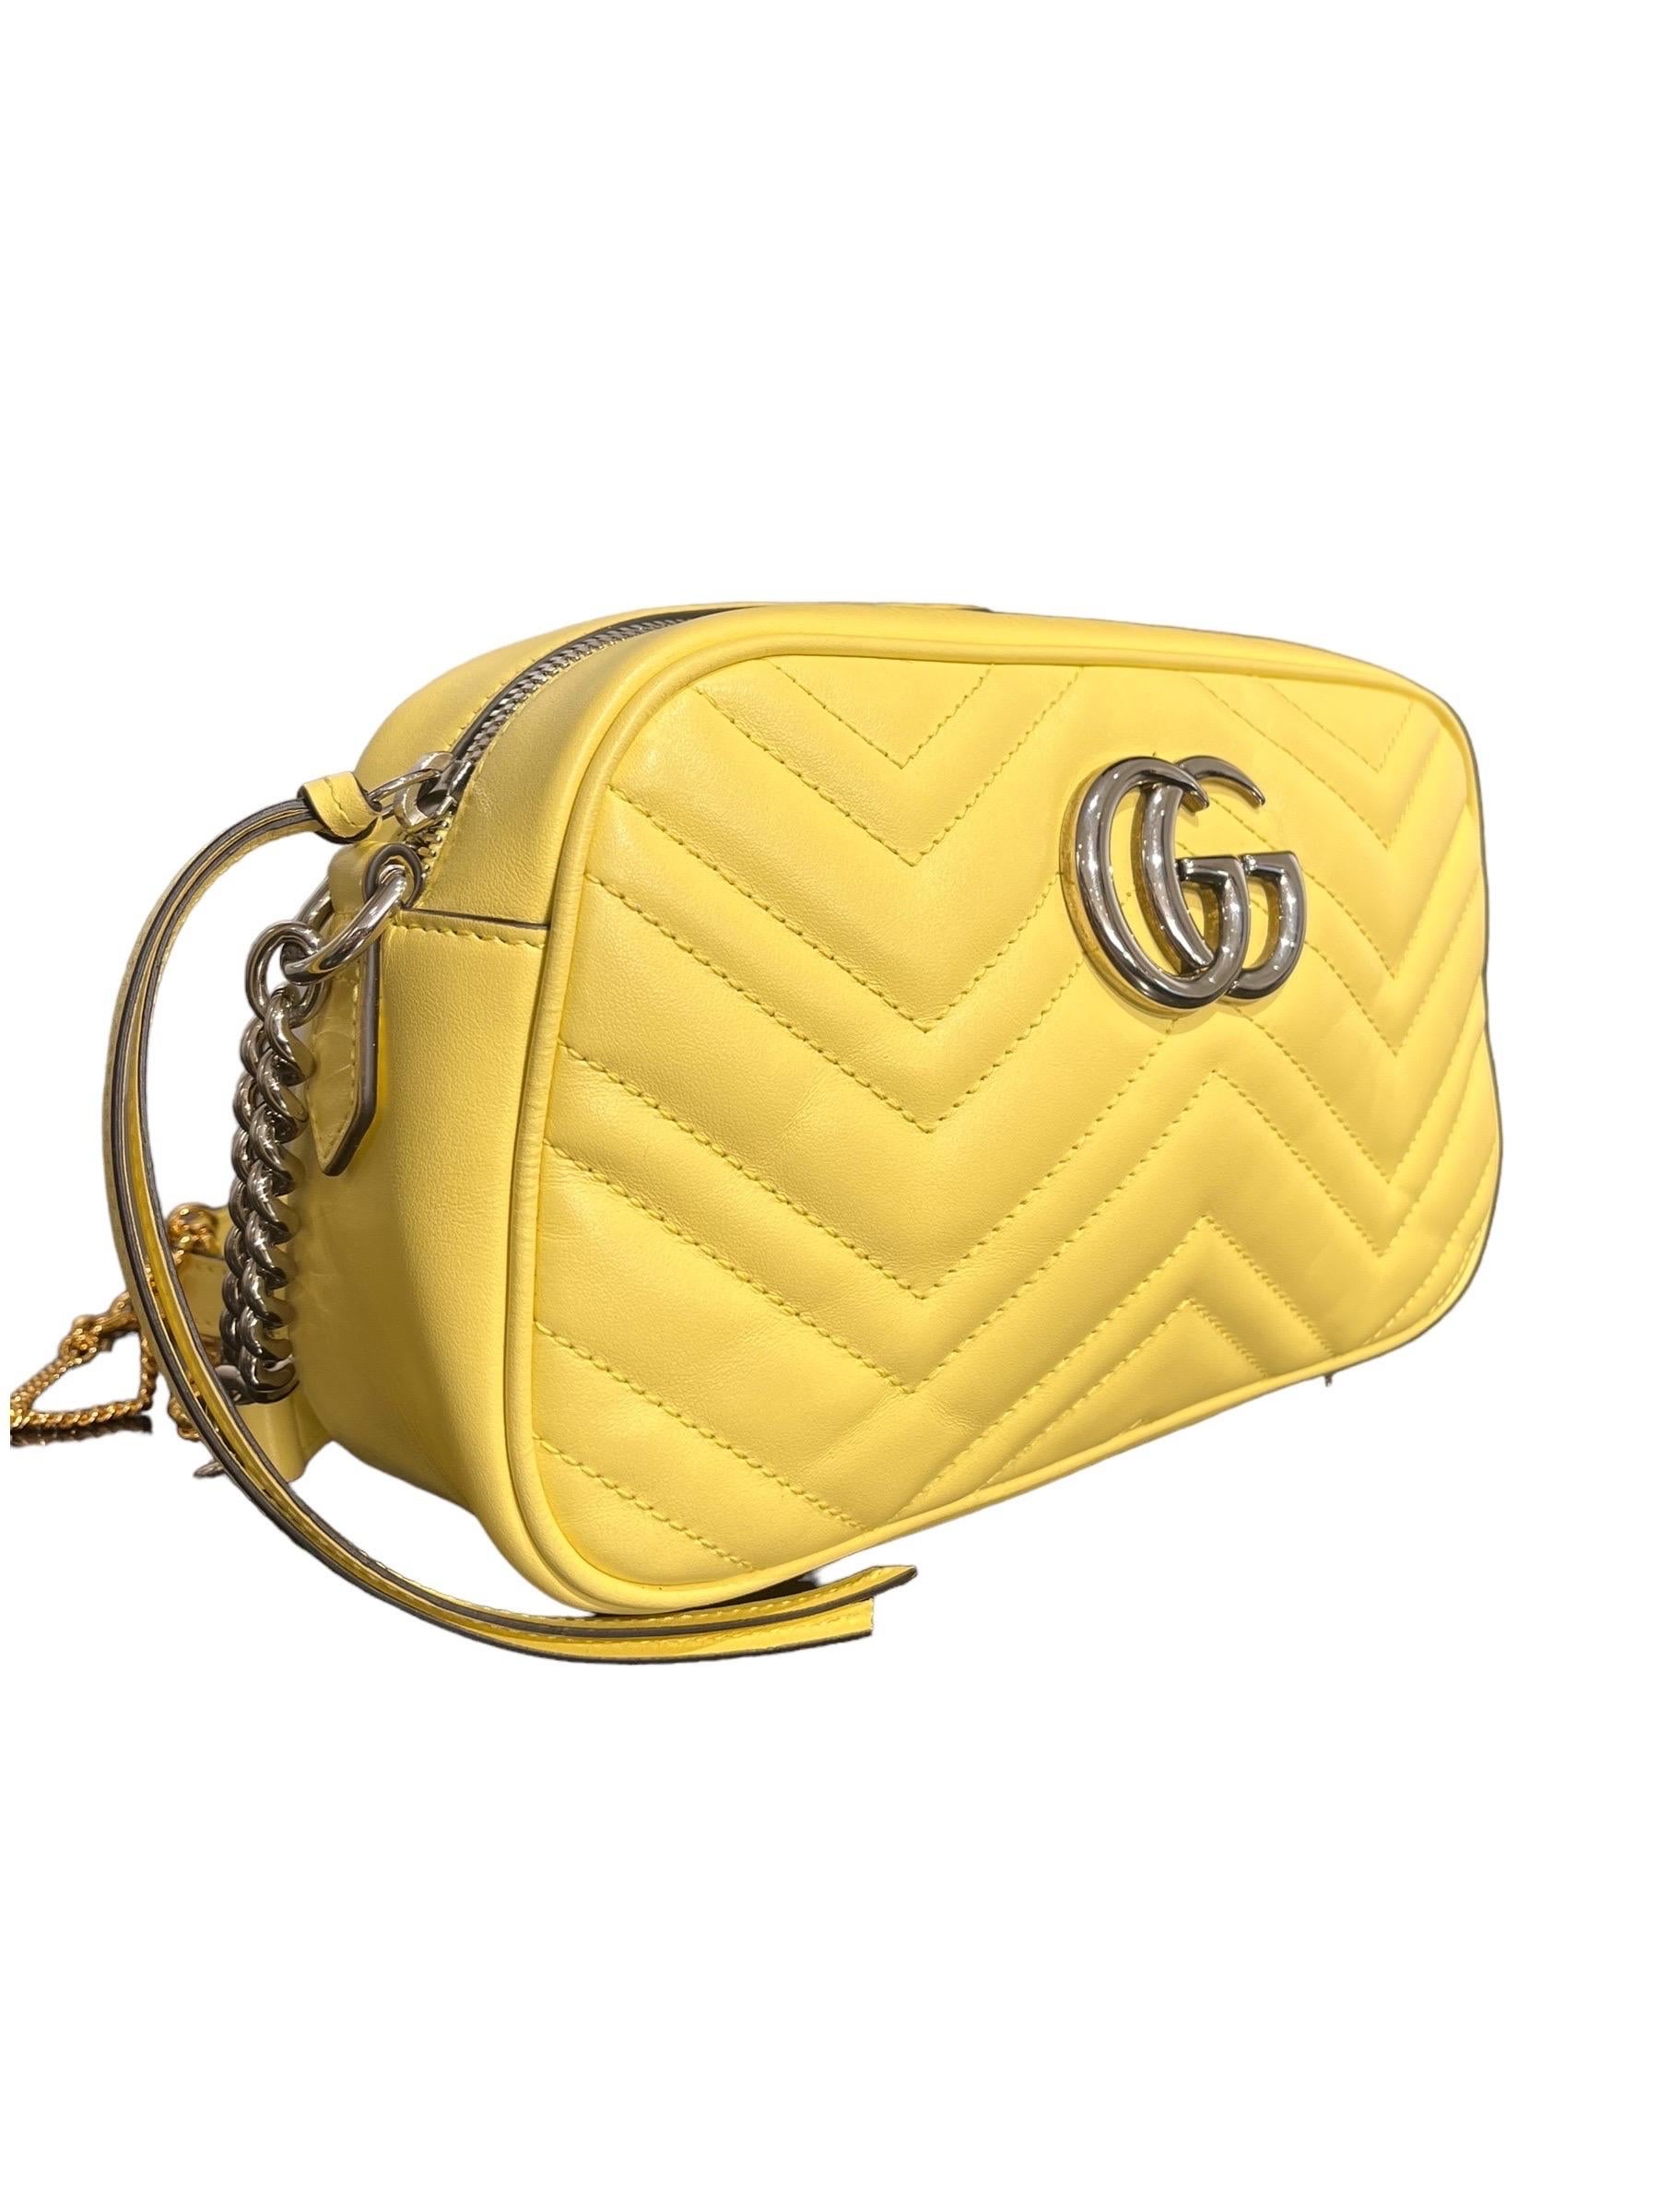 Borsa a Tracolla Gucci Camera Bag Marmont Giallo Pastel In Good Condition For Sale In Torre Del Greco, IT